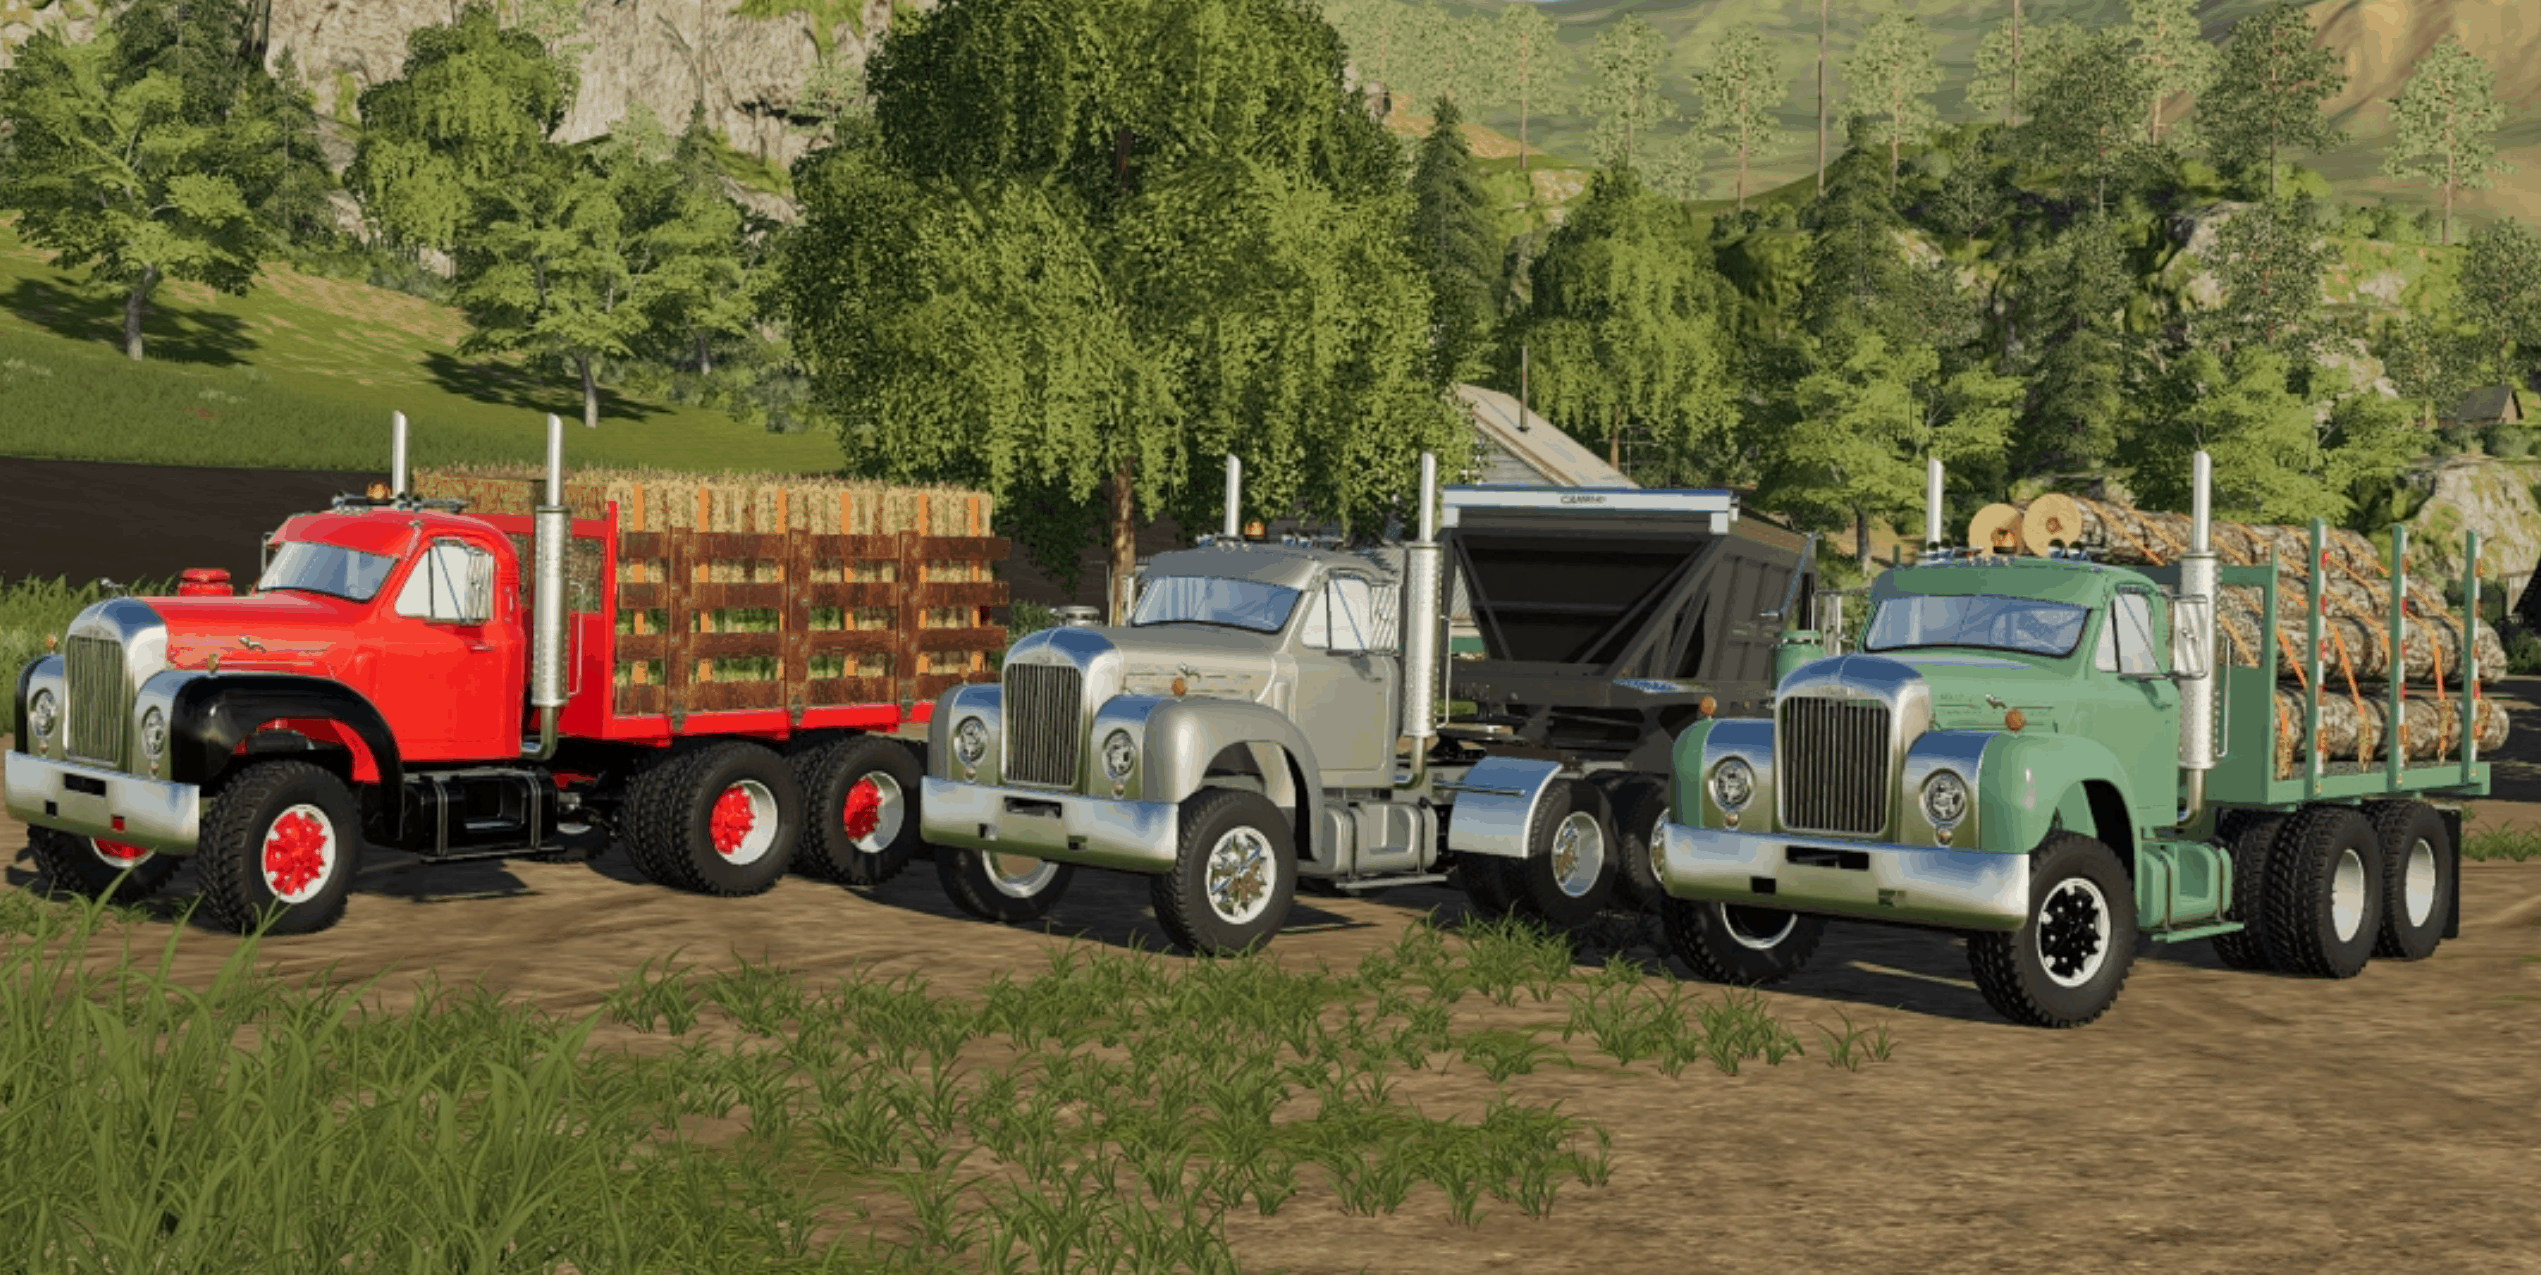 Mack B61 Truck V10 Fs 19 Farming Simulator 22 Mod Ls22 Mod Download 0309